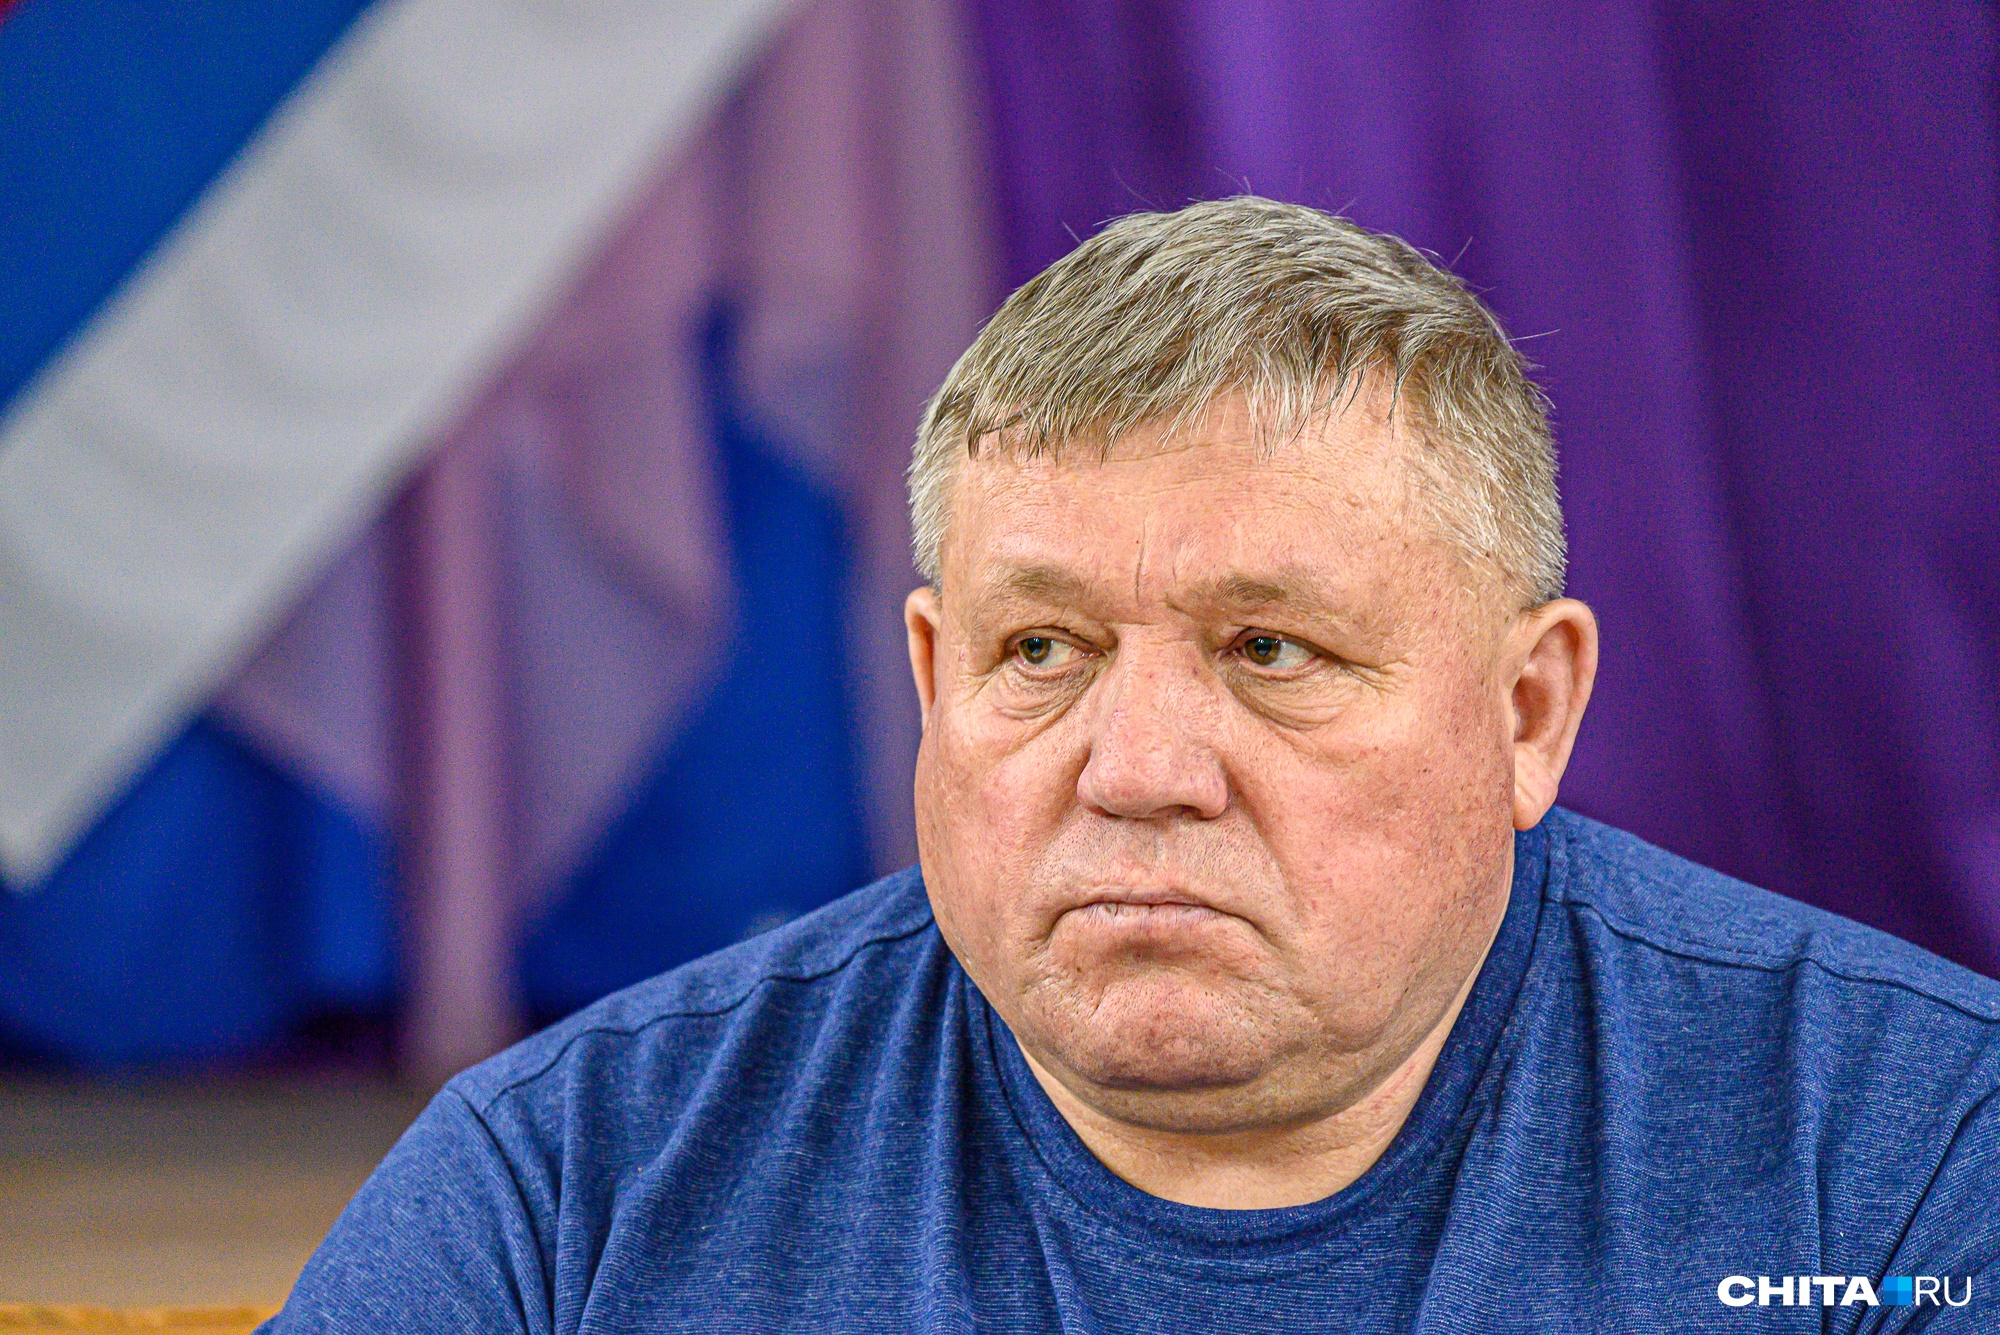 Глава района Забайкалья Воробьев объяснил, что премию в 300 тыс. руб. ему назначил губернатор